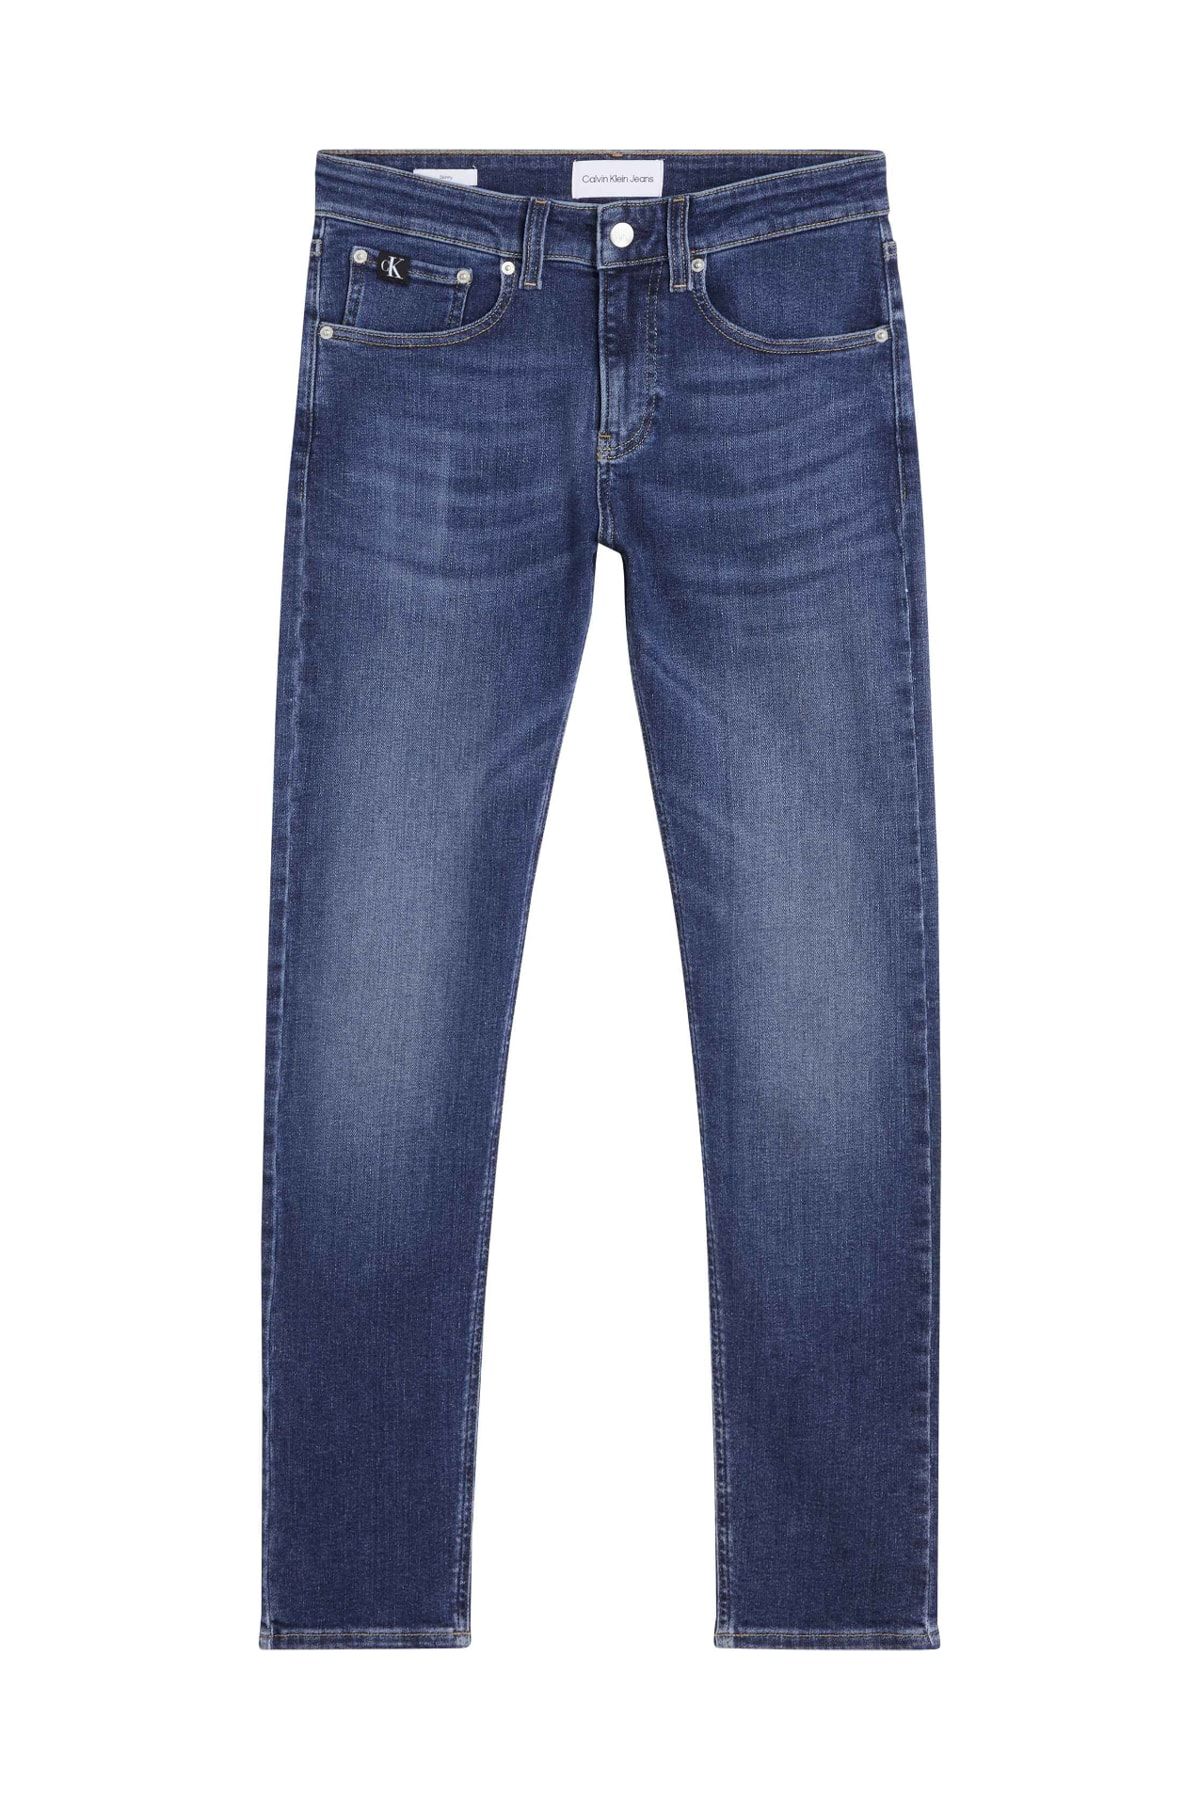 Calvin Klein جین مردانه تیره